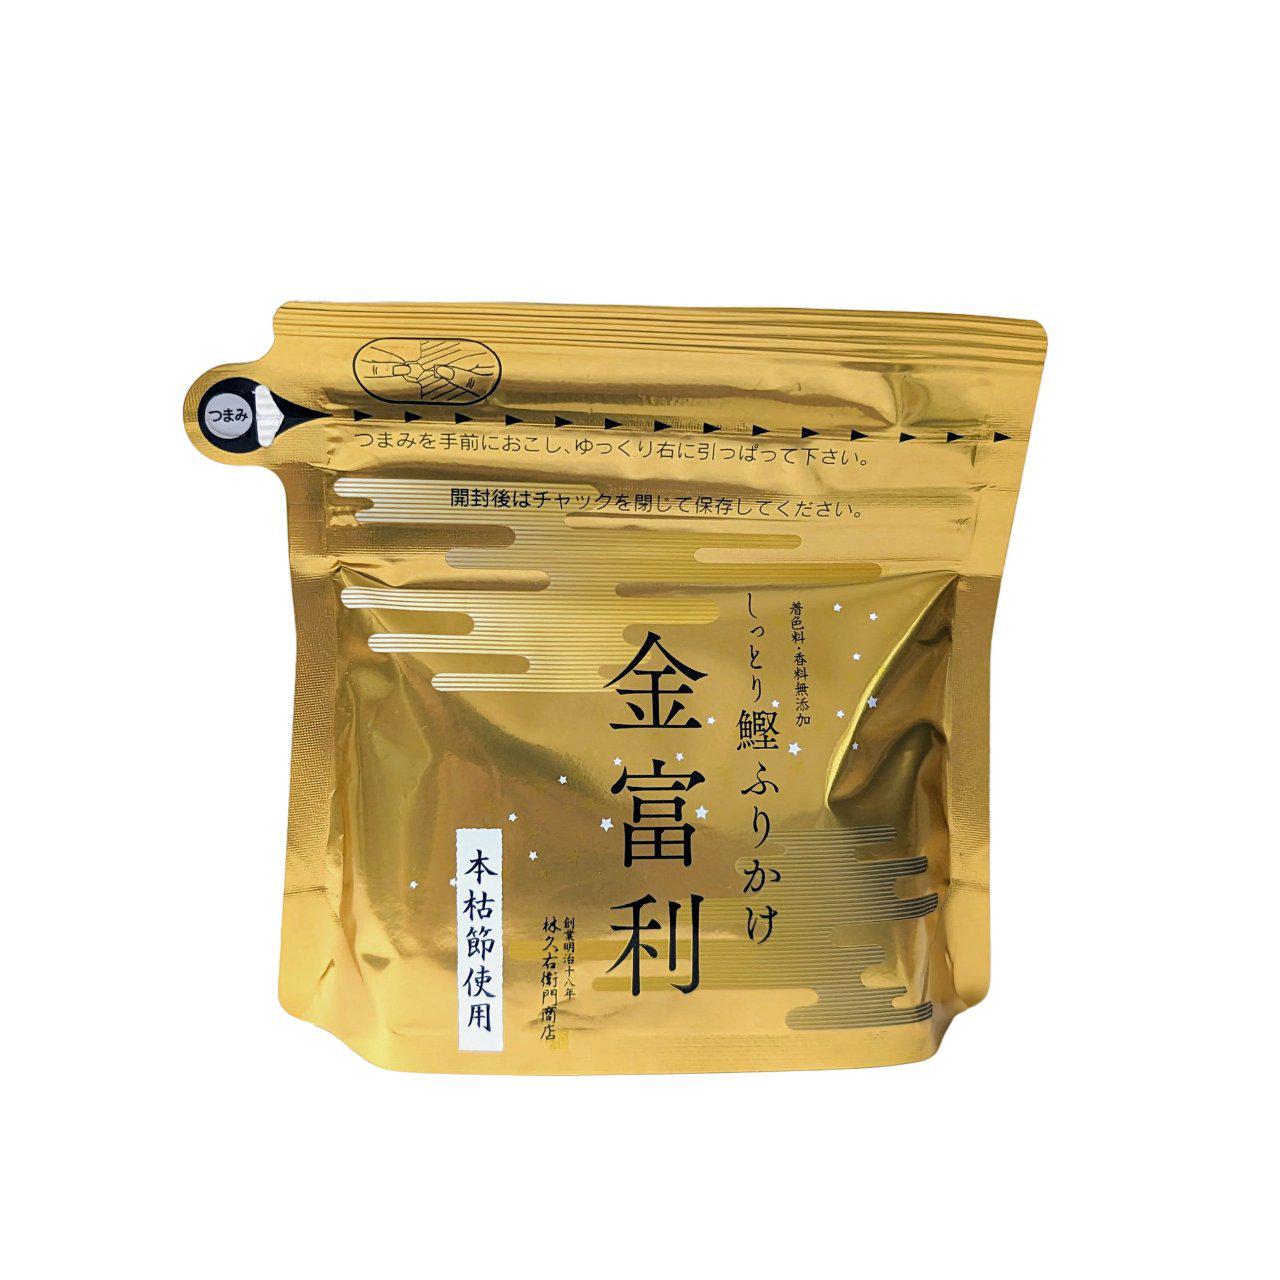 Kyuemon Dried Bonito Flakes Furikake Natural All Purpose Seasoning (Pack of 3)